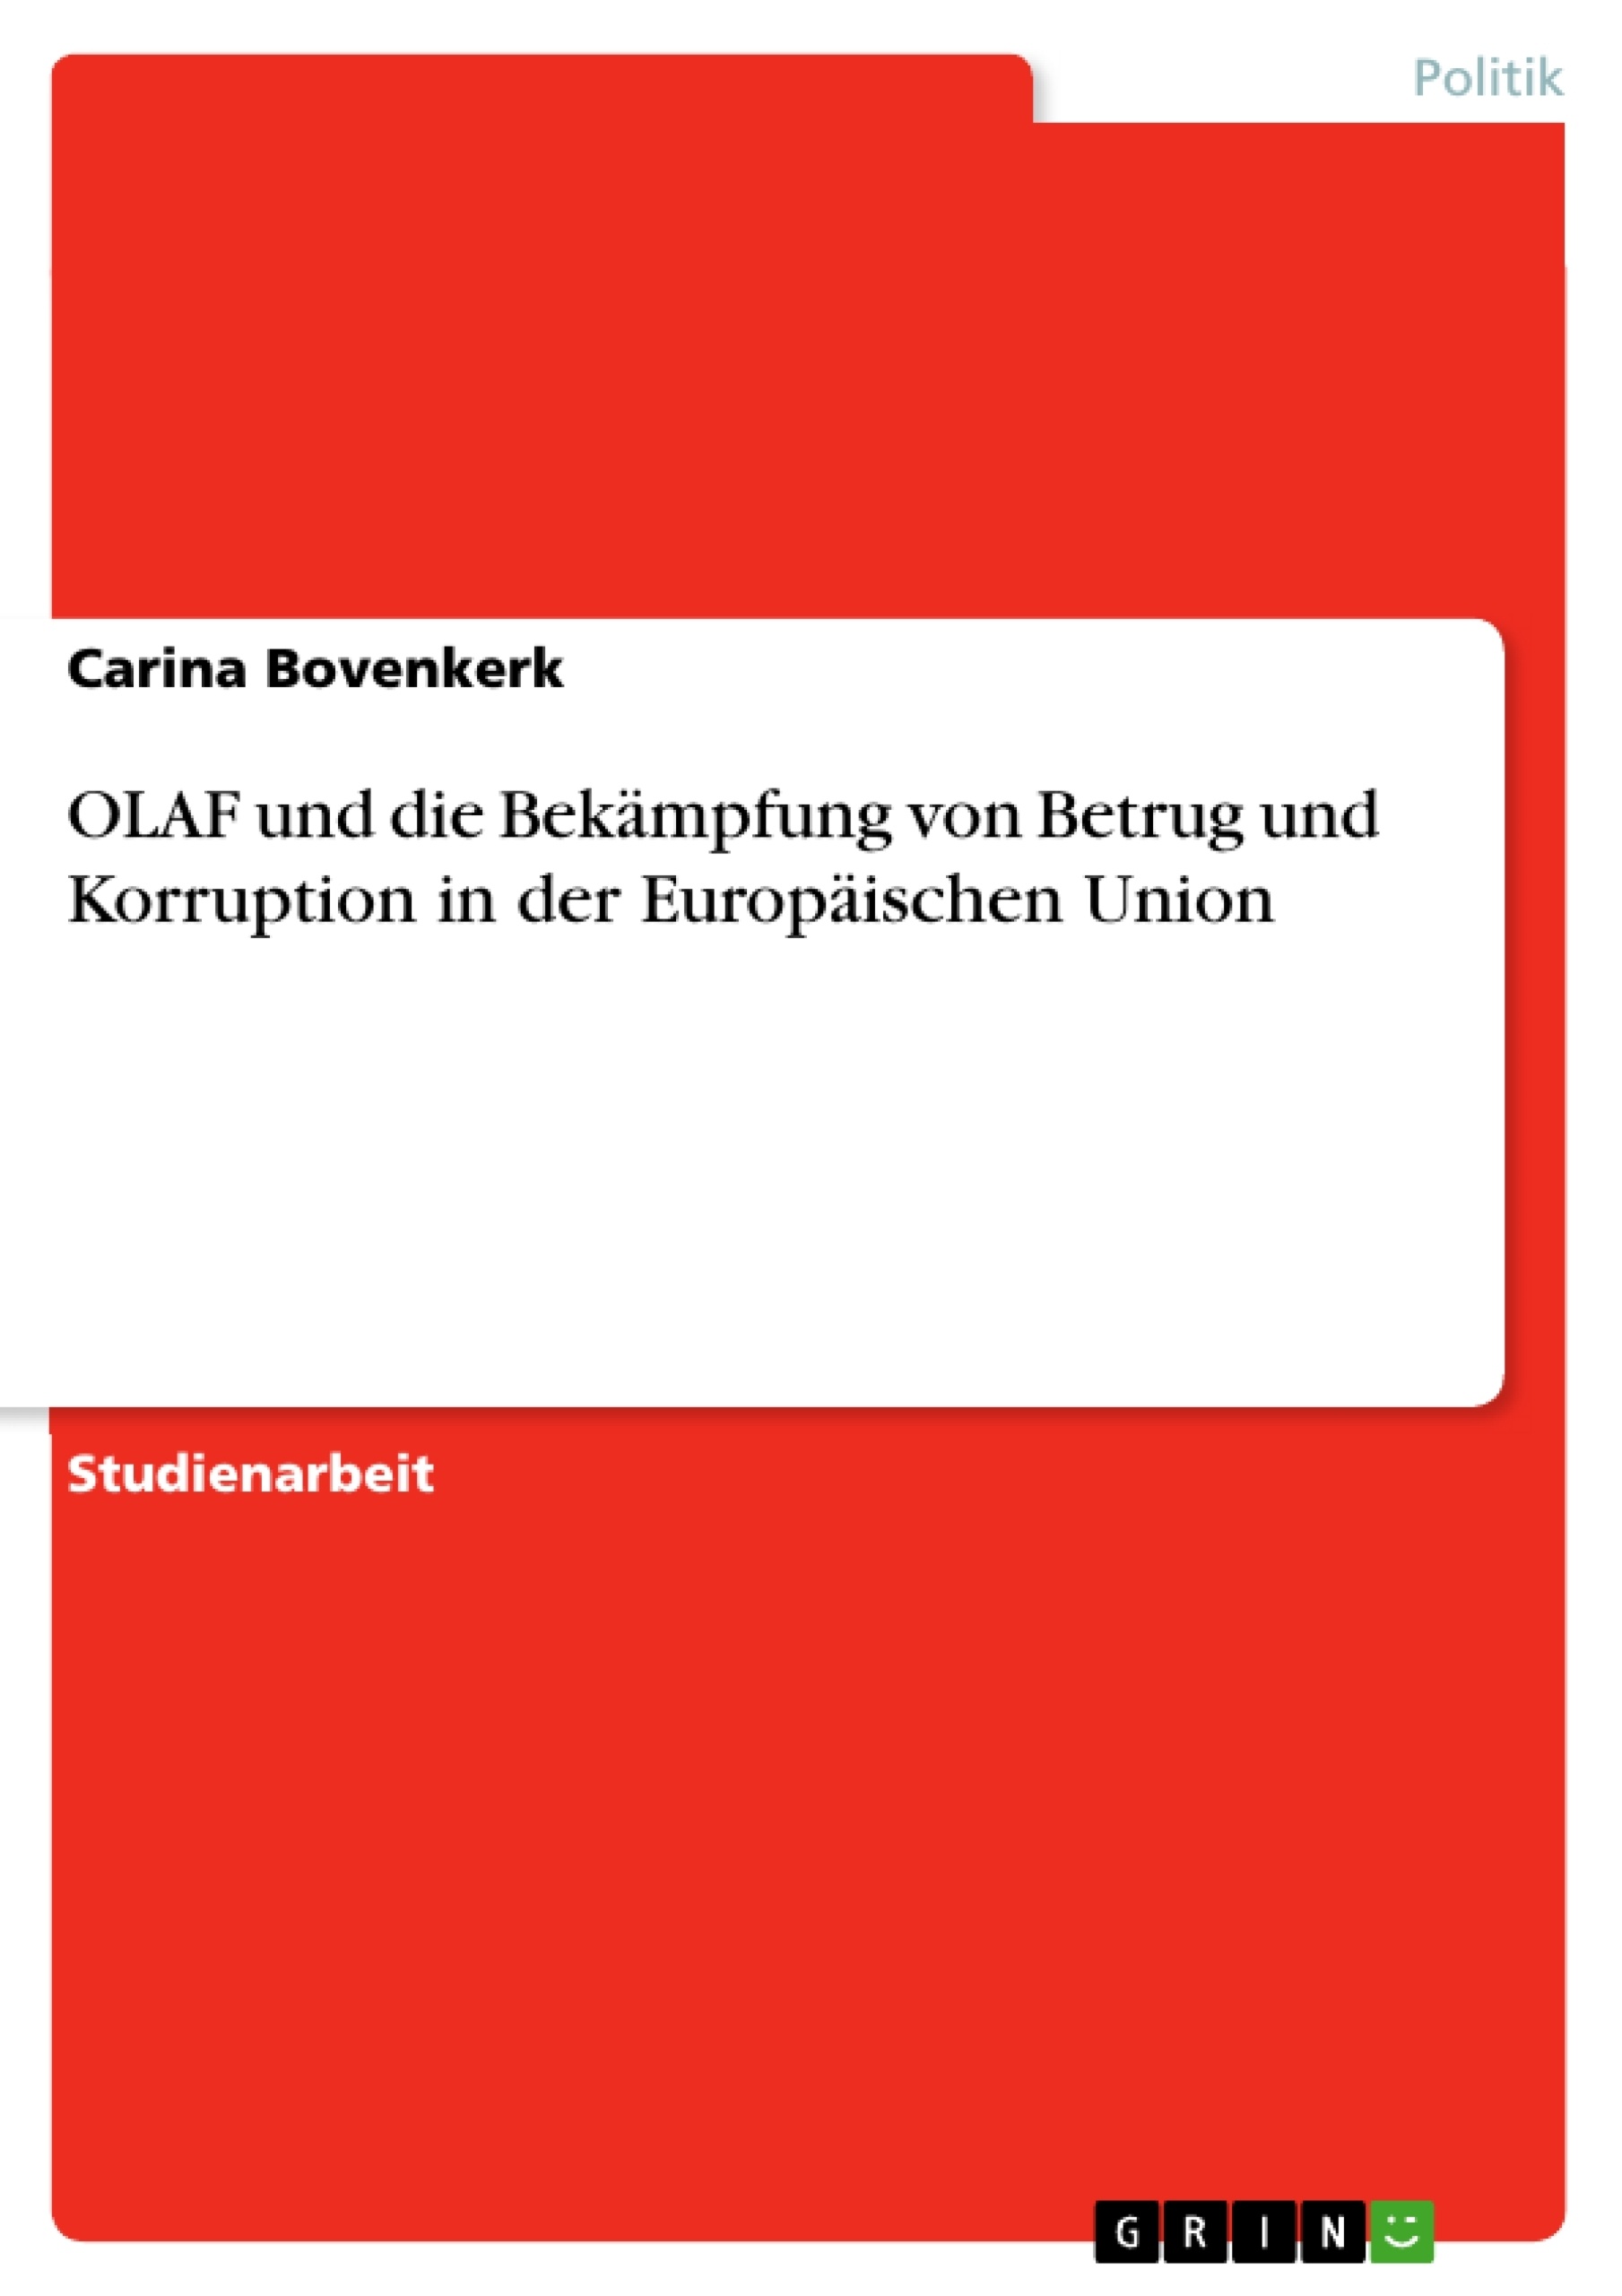 Title: OLAF und die Bekämpfung von Betrug und Korruption in der Europäischen Union